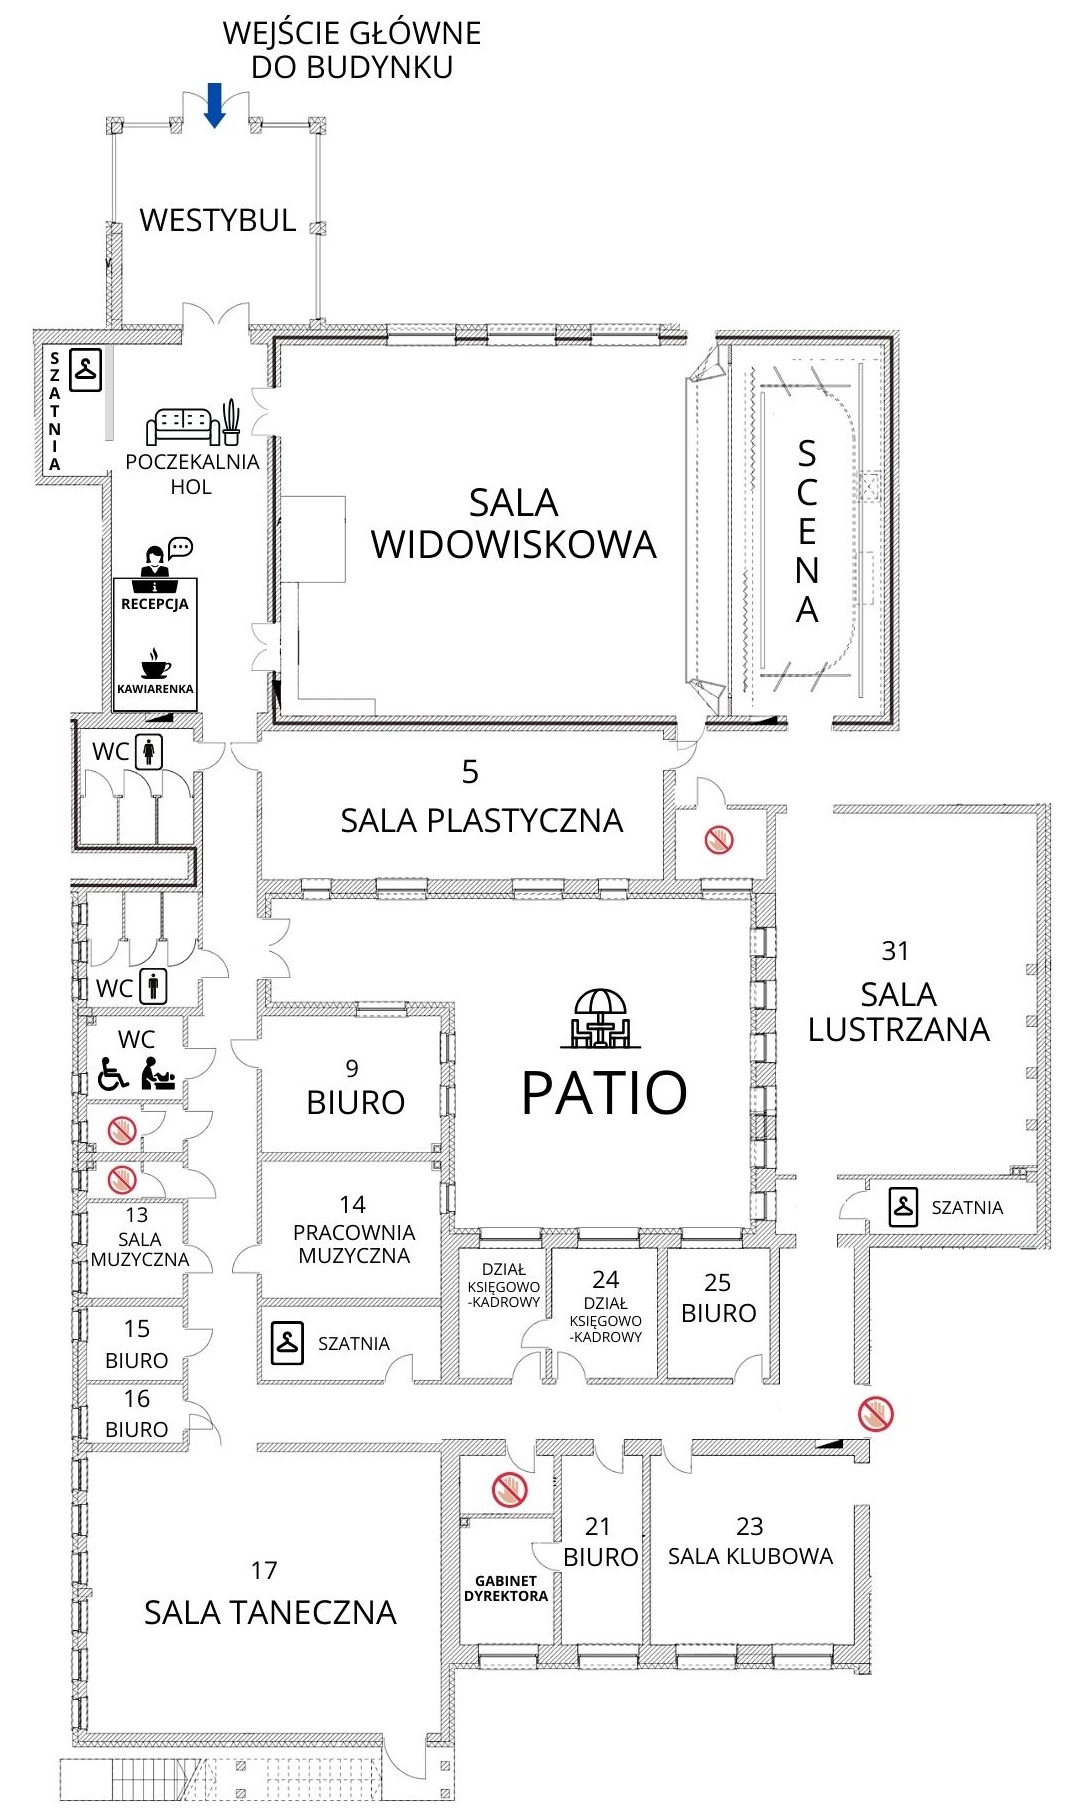 Obraz przedstawia rzut z góry parteru Centrum Kultury w Łomiankach, z podziałem na poszczególne pomieszczenia oraz informacjami o nich.